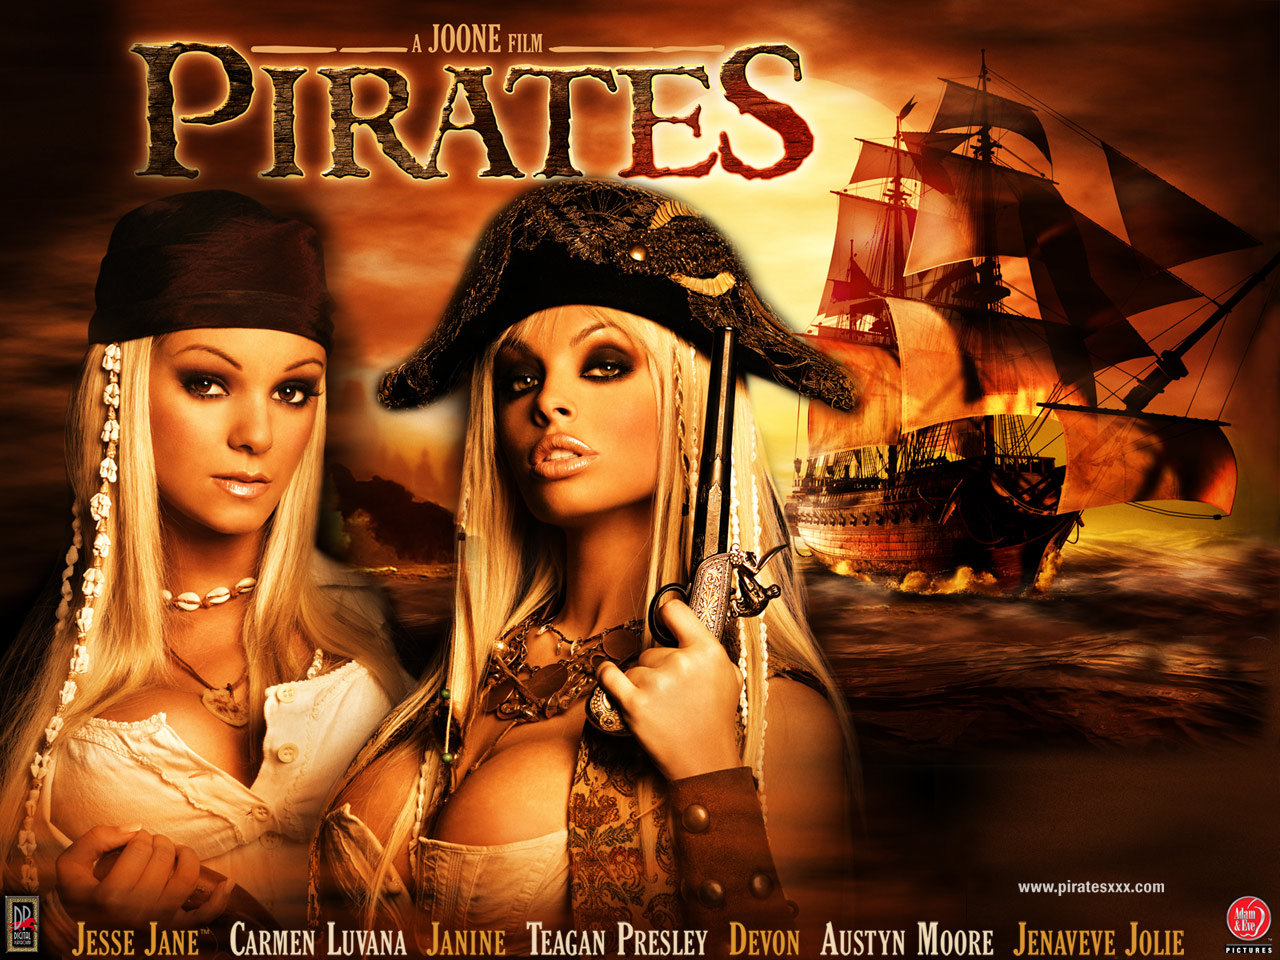 Скачать Пираты с русским переводом (2005) DVDRip бесплатно без